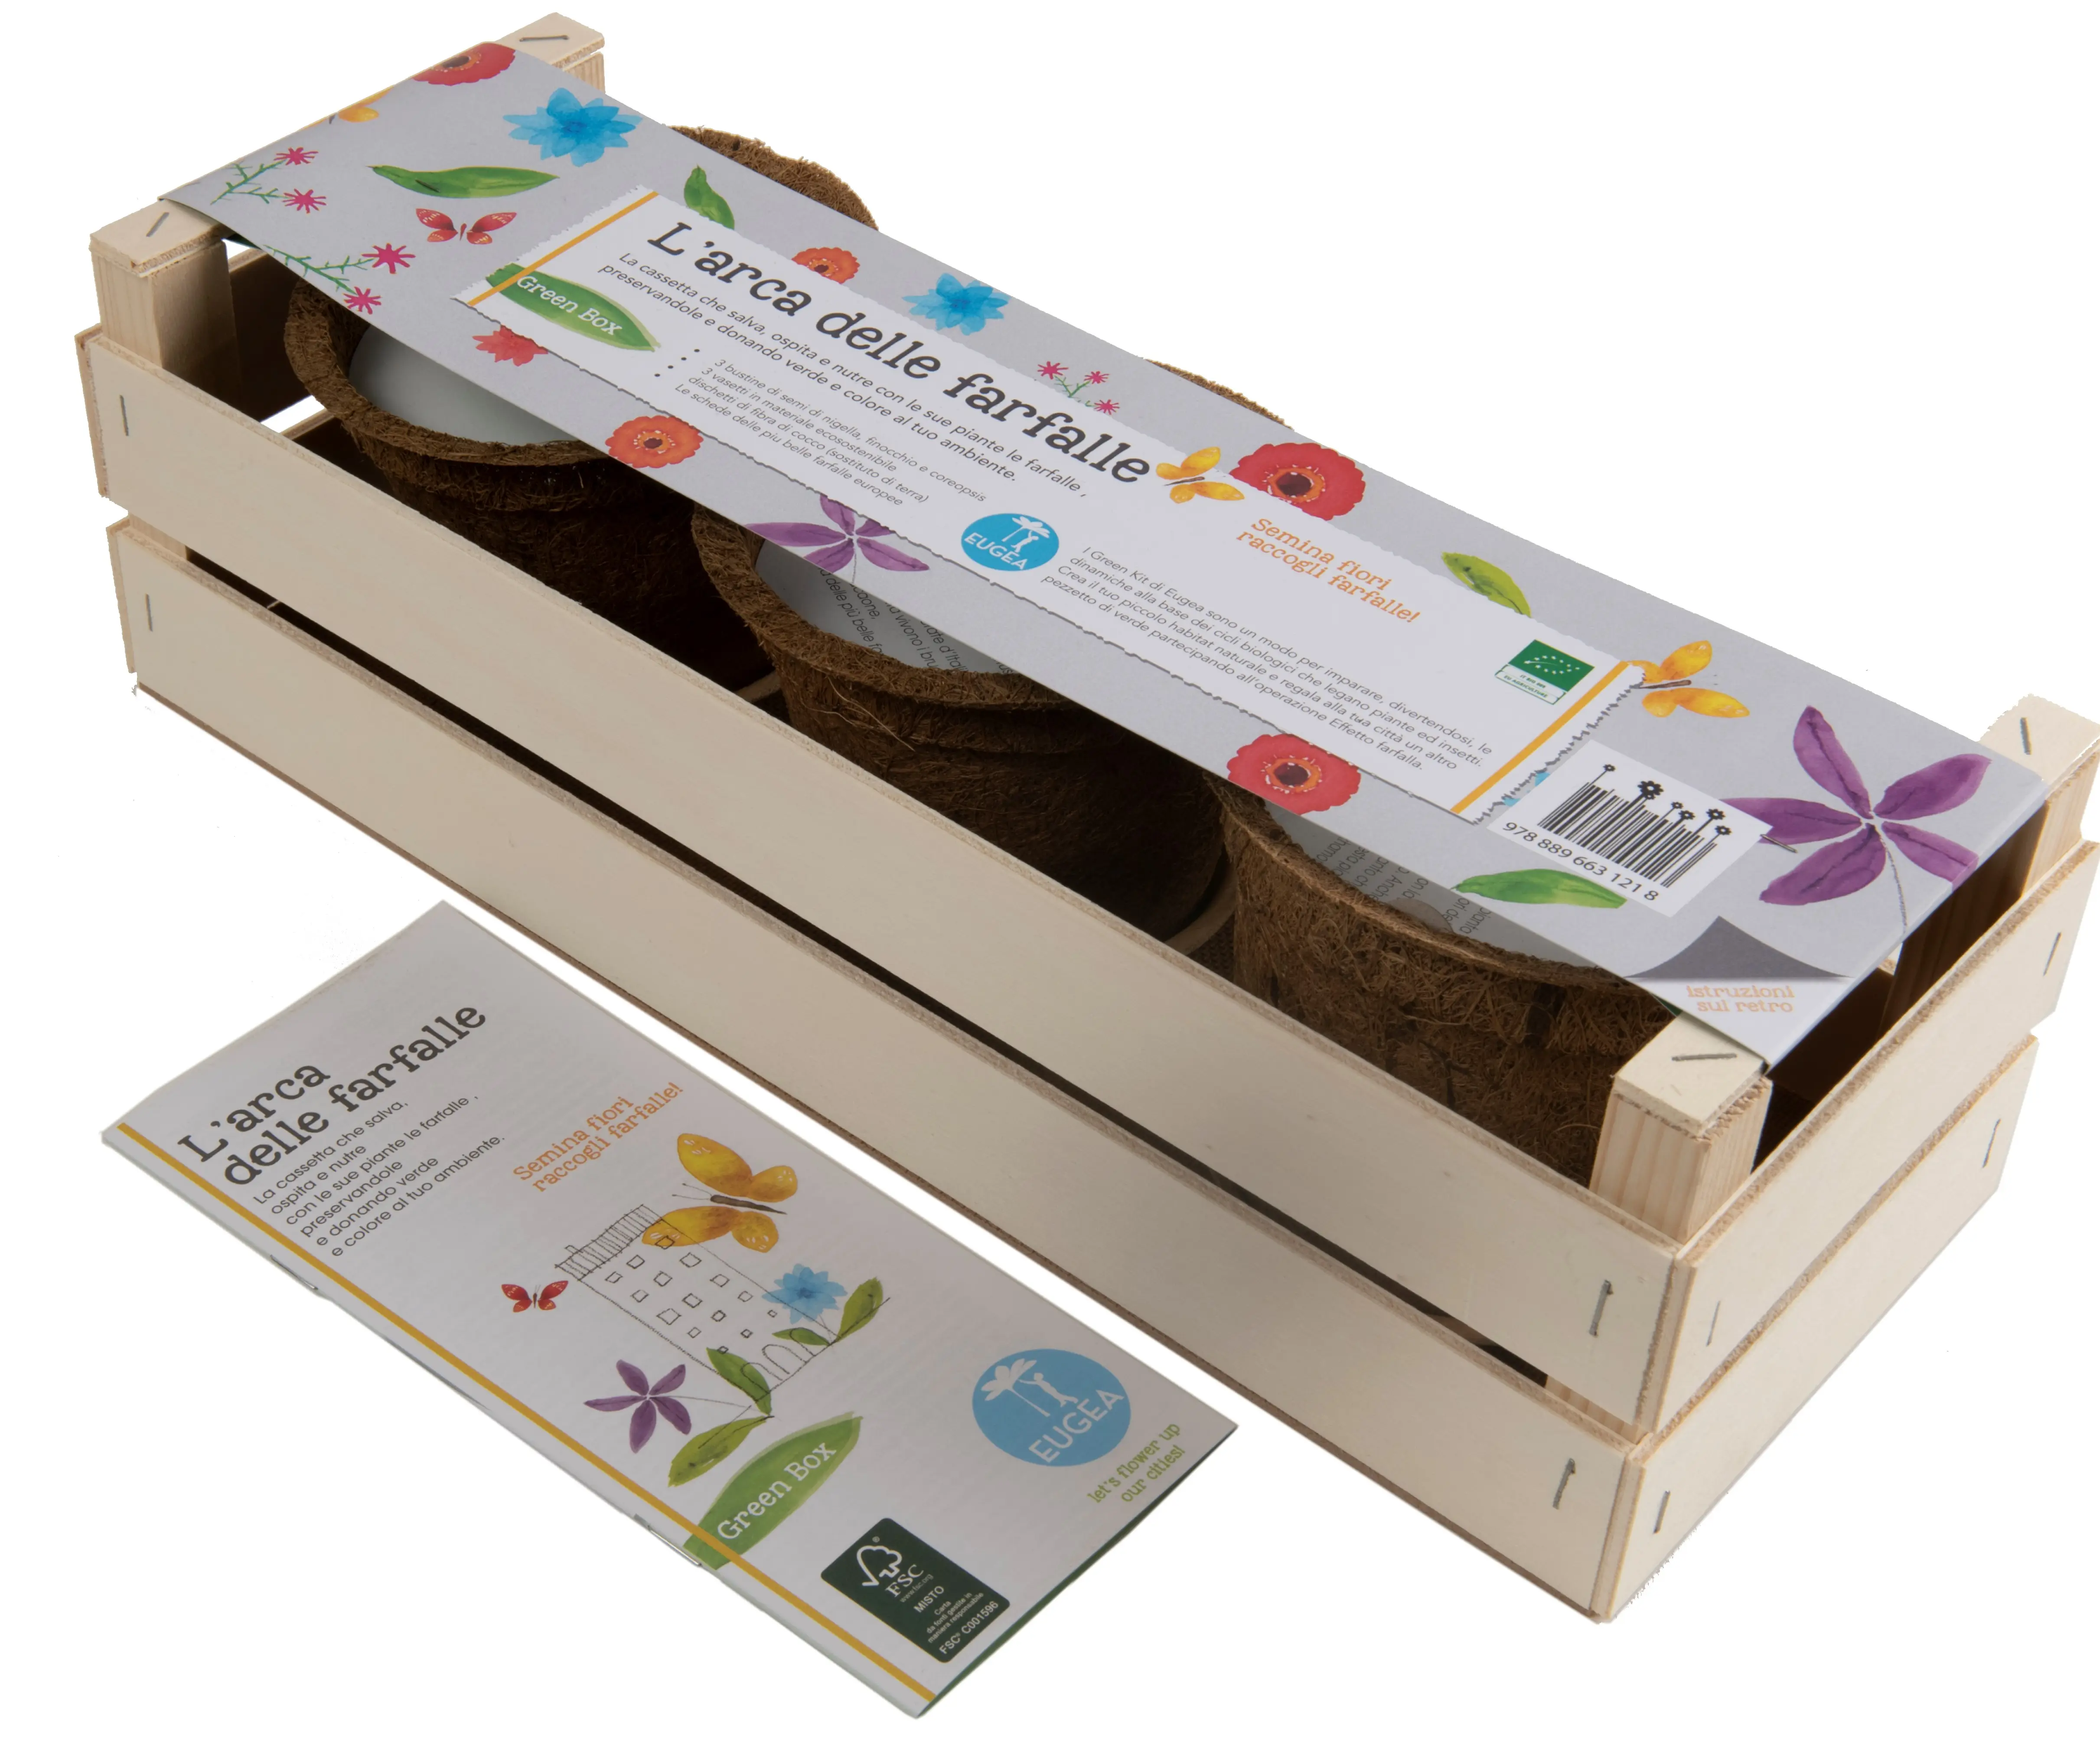 Yeşil kutu-kelebek ark, kullanıma hazır çiçekler dikmek için kit